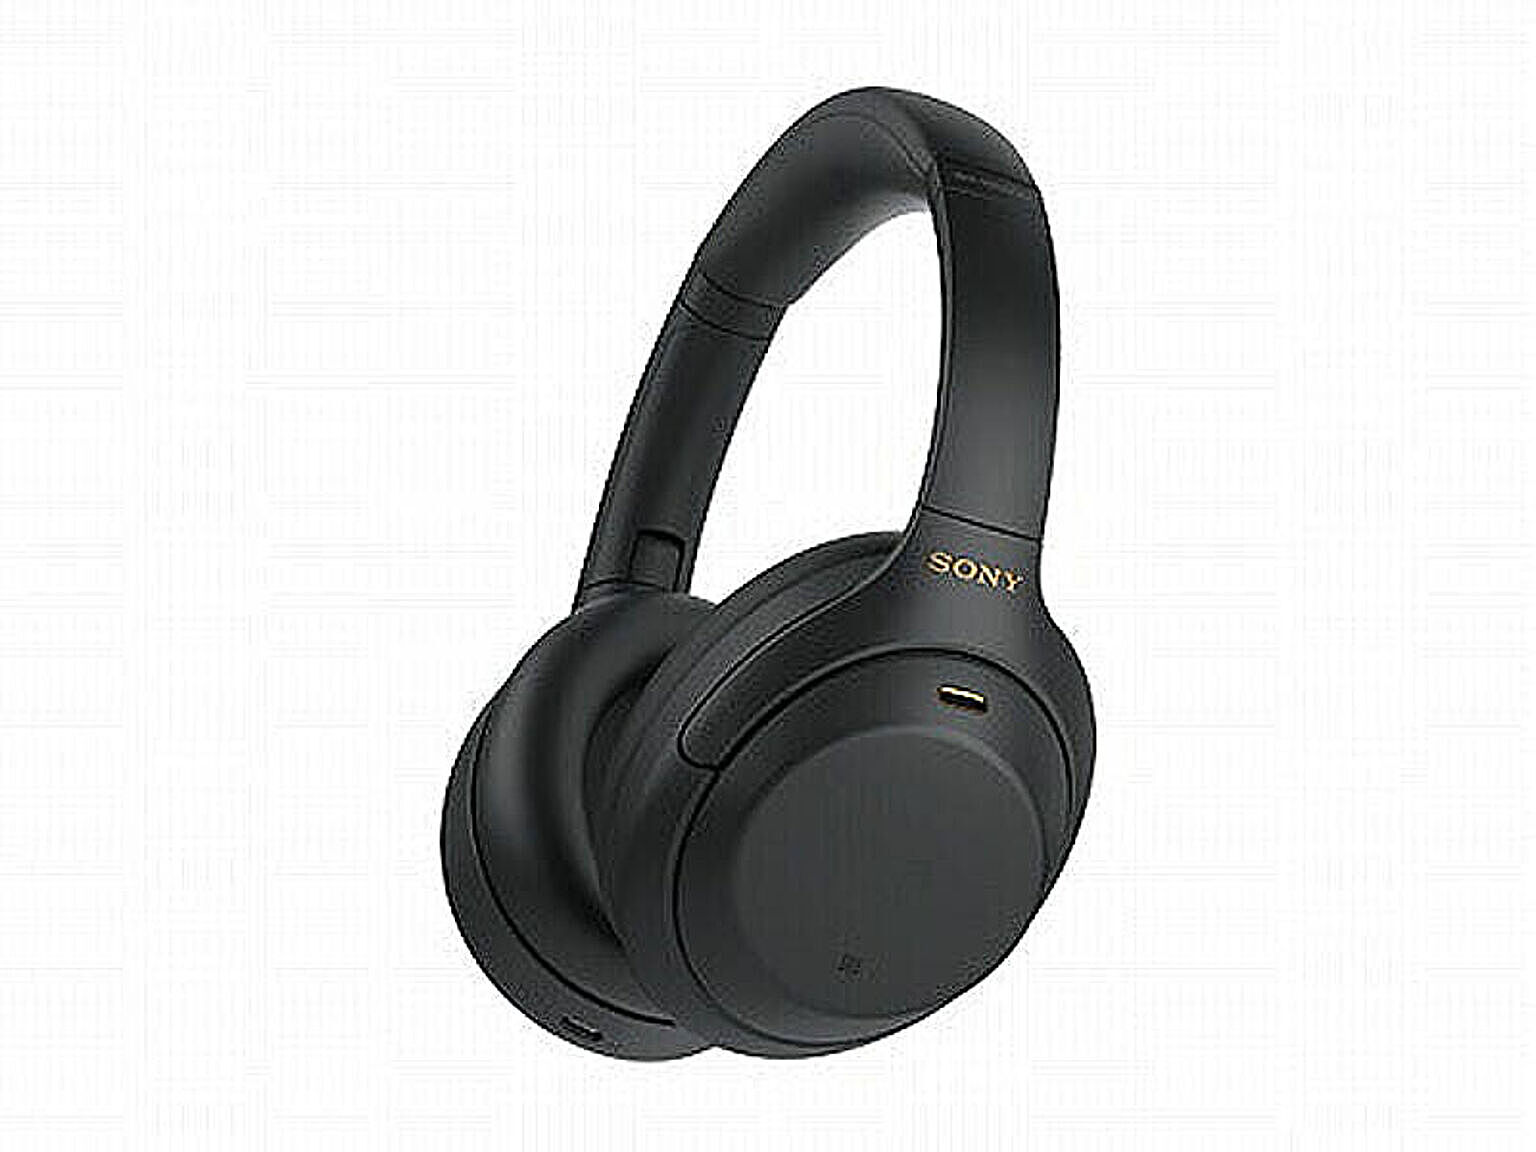 ソニー SONY ノイズキャンセリング機能搭載Bluetooth対応ダイナミック密閉型ヘッドホン 1000Xシリーズ Bluetoothヘッドホン WH-1000XM4 BM ブラック